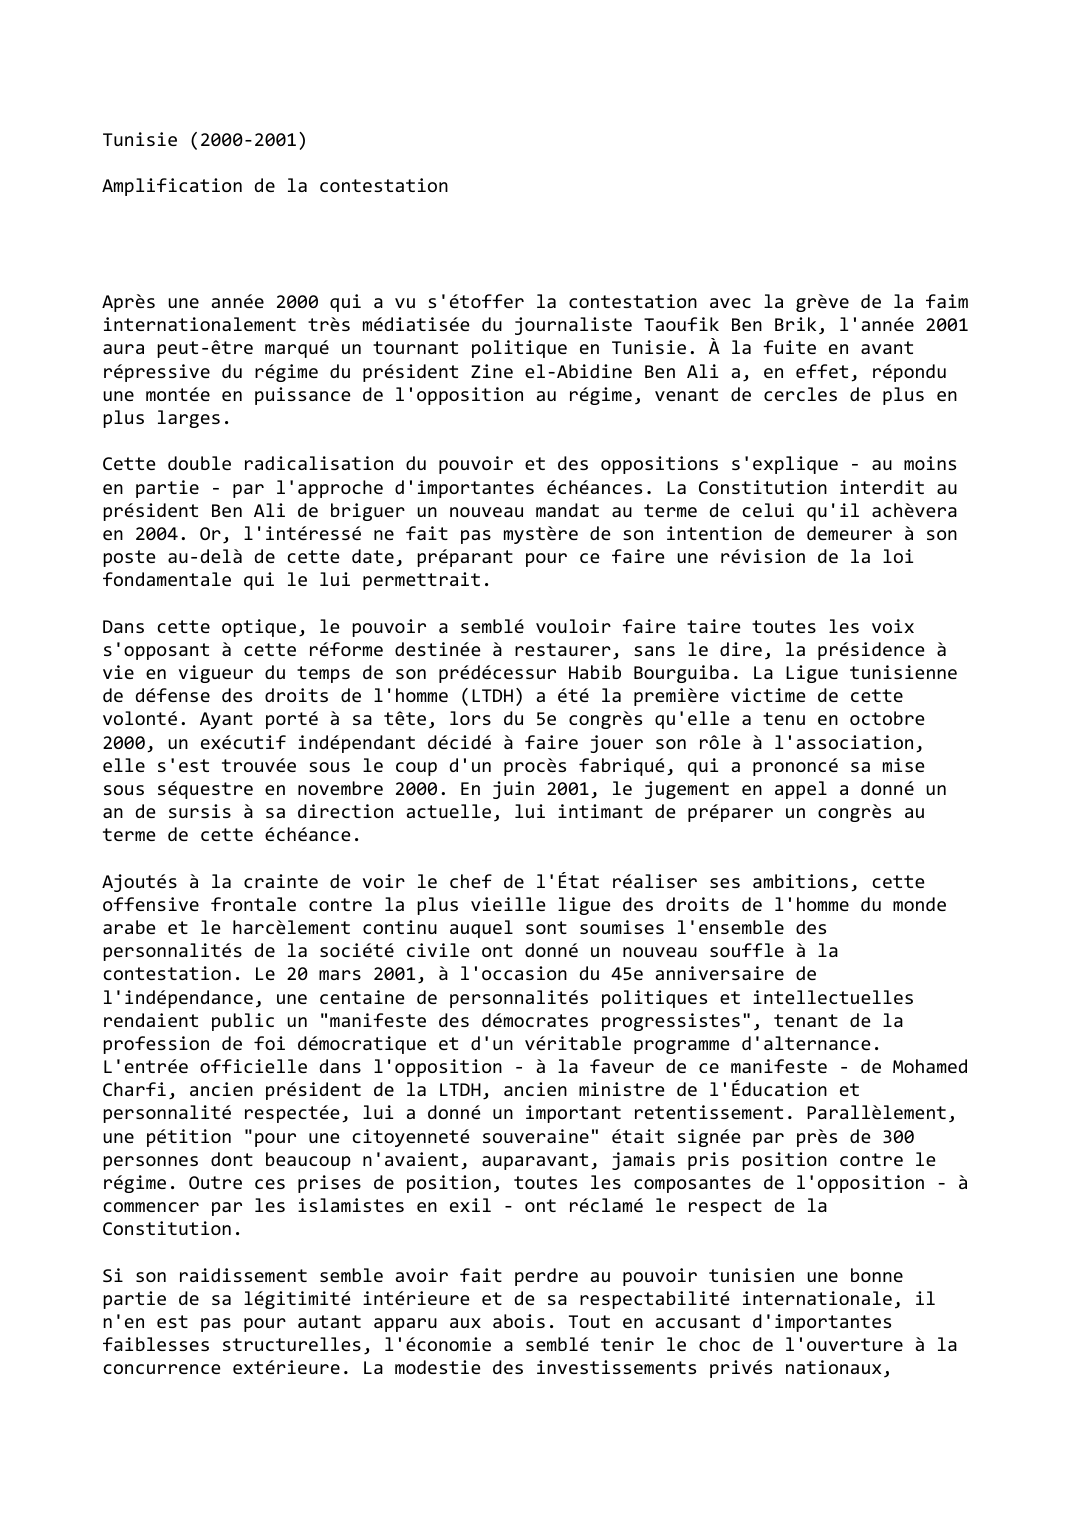 Prévisualisation du document Tunisie (2000-2001)

Amplification de la contestation